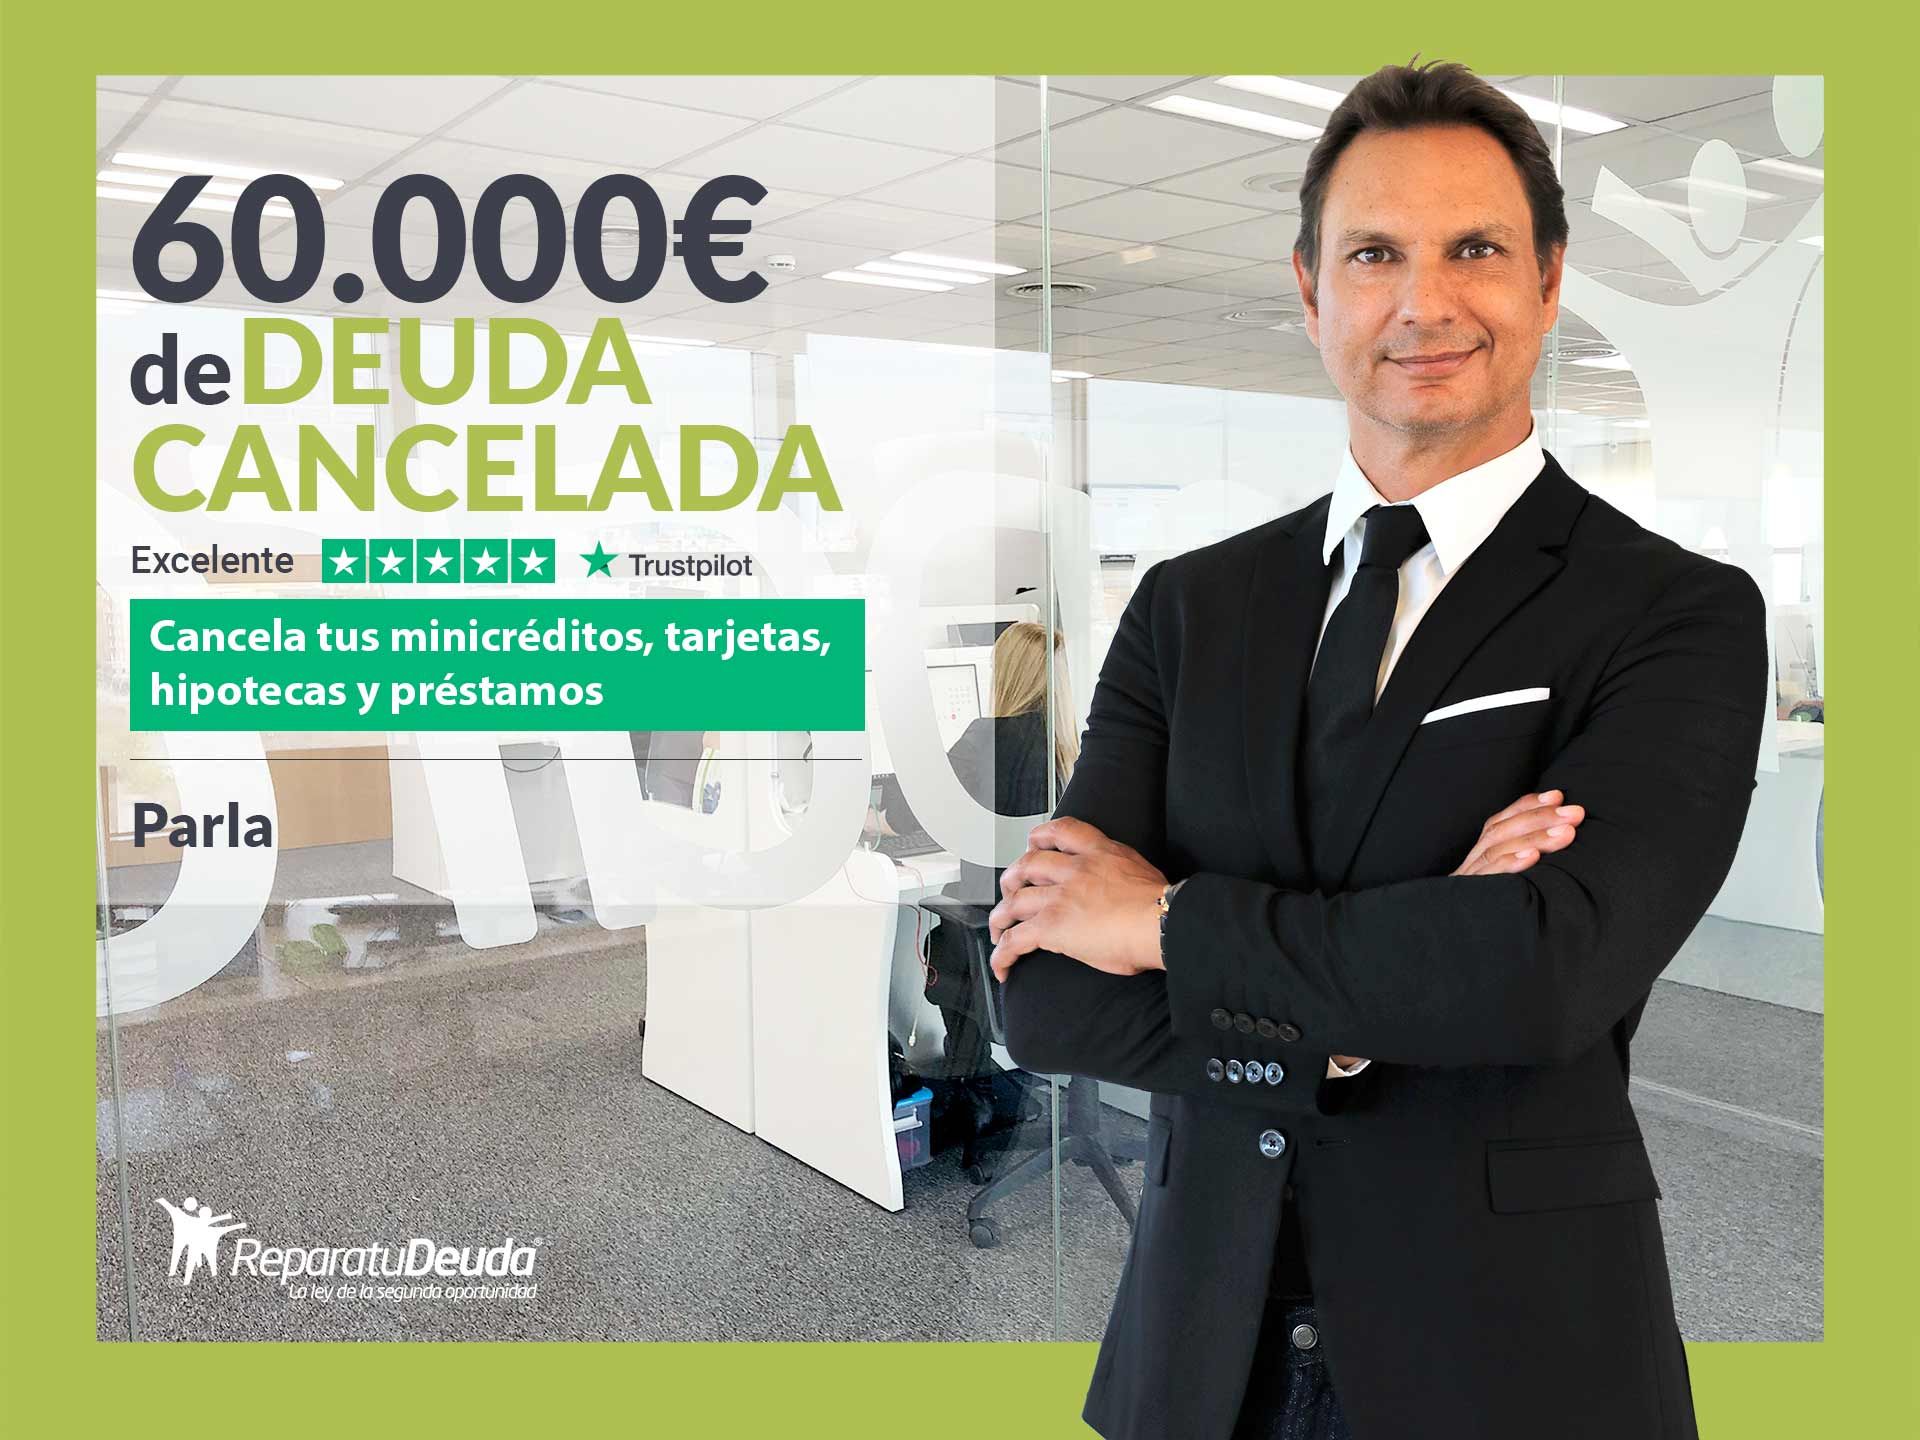 Repara tu Deuda Abogados cancela 60.000? en Parla (Madrid) con la Ley de Segunda Oportunidad